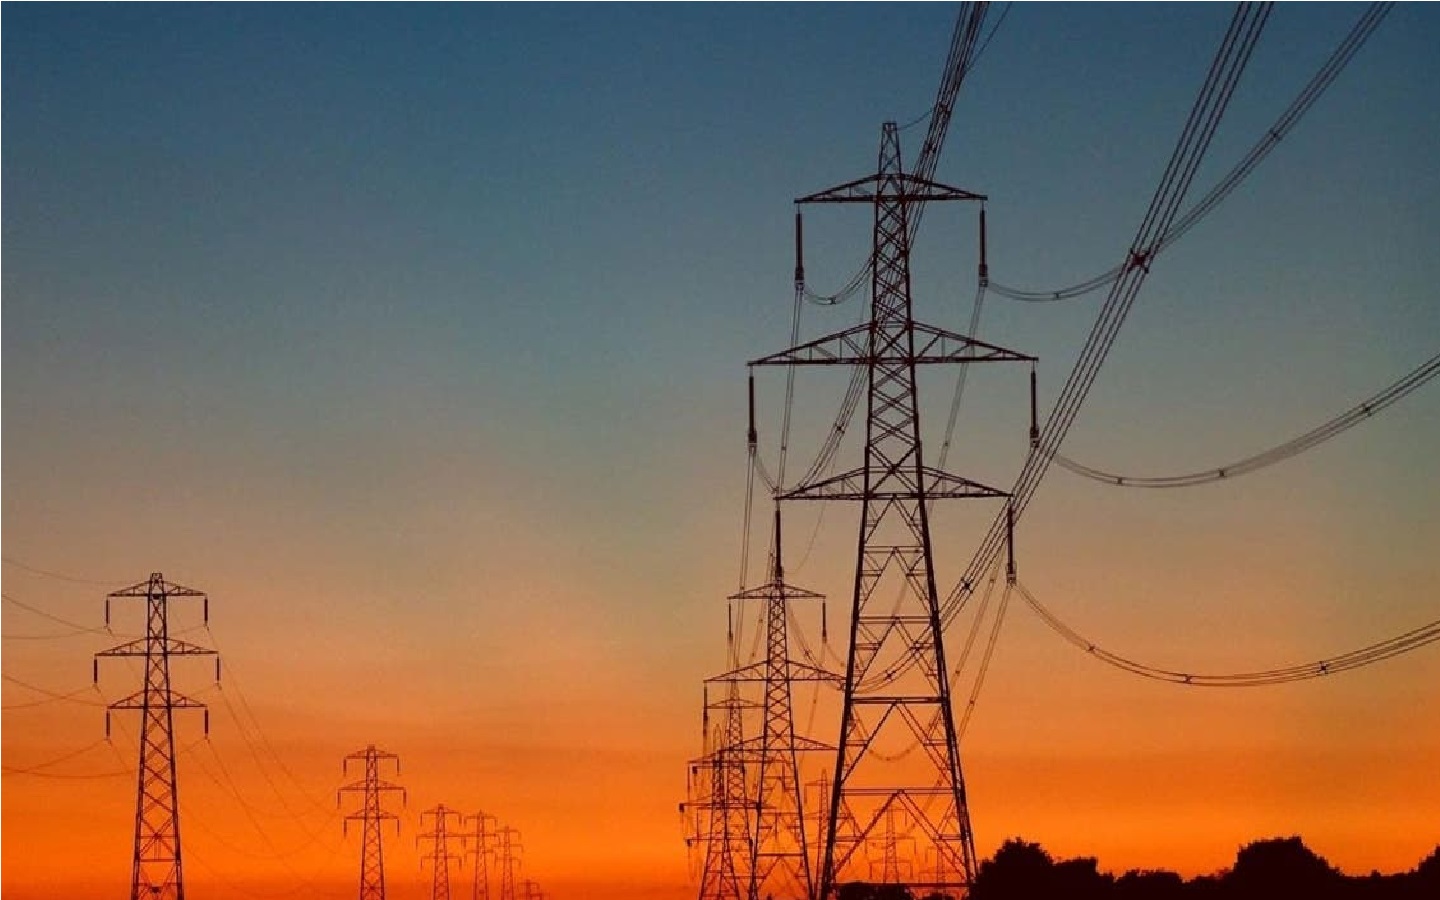 “الكهرباء زودتها حبتين” مواعيد قطع الكهرباء في الإسكندرية 2023 بجميع المناطق